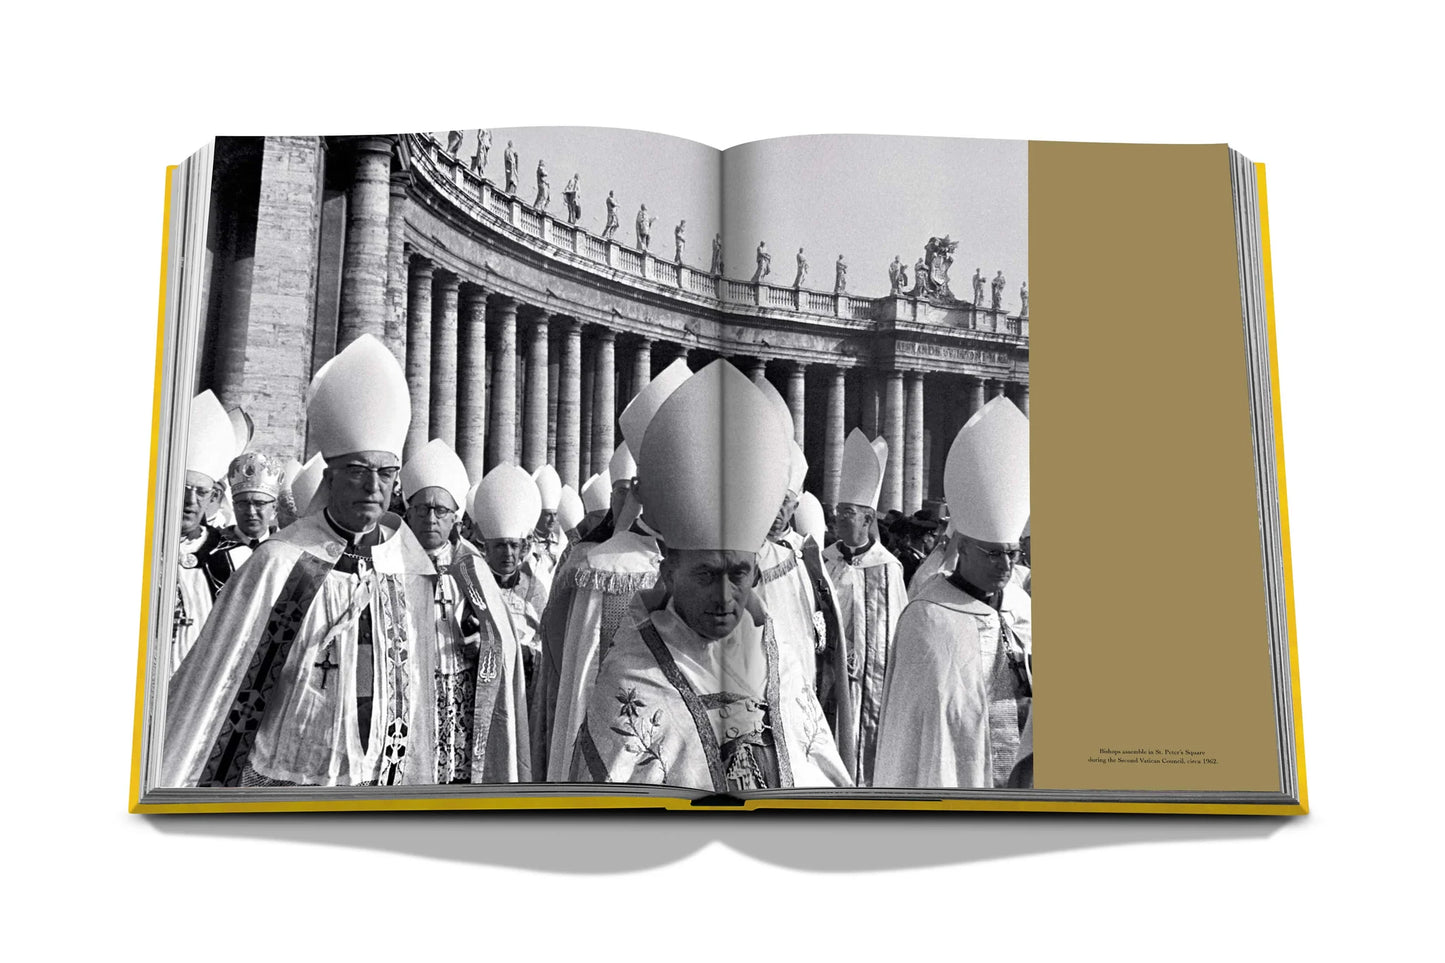 Buchen Sie „Vatikan: Ein privater Besuch in einer geheimen Welt: Impossible Collection“.